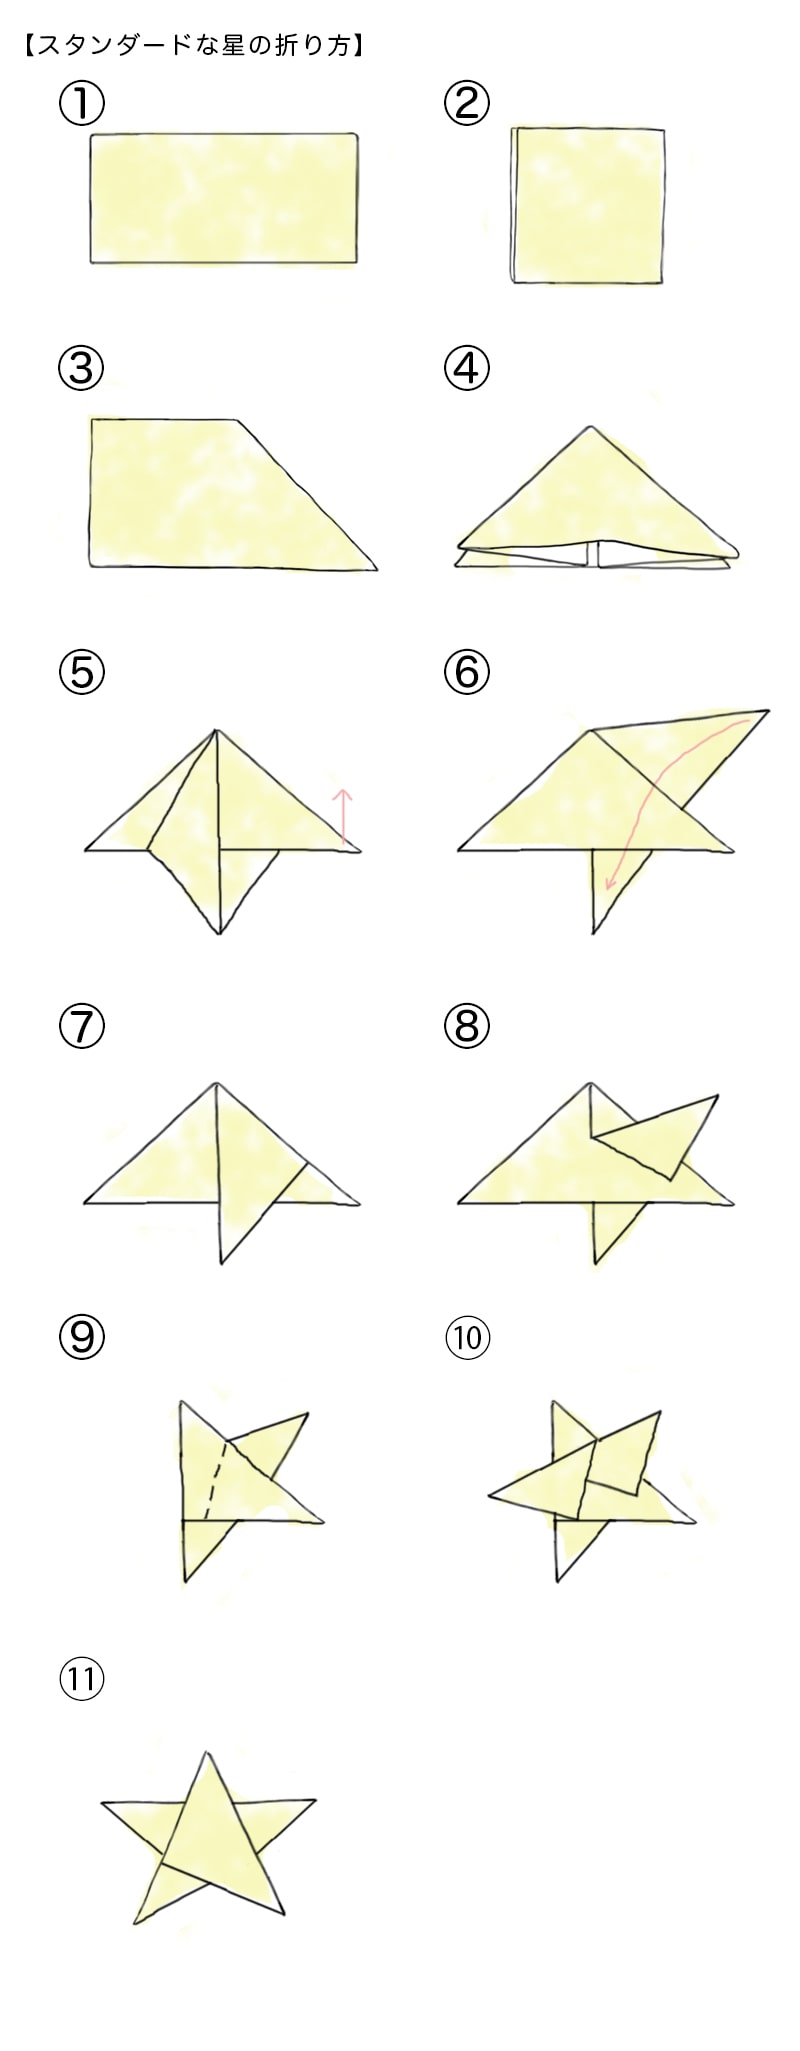 シモジマ オンライン 使いみちいろいろ 折り紙で作る星の折り方